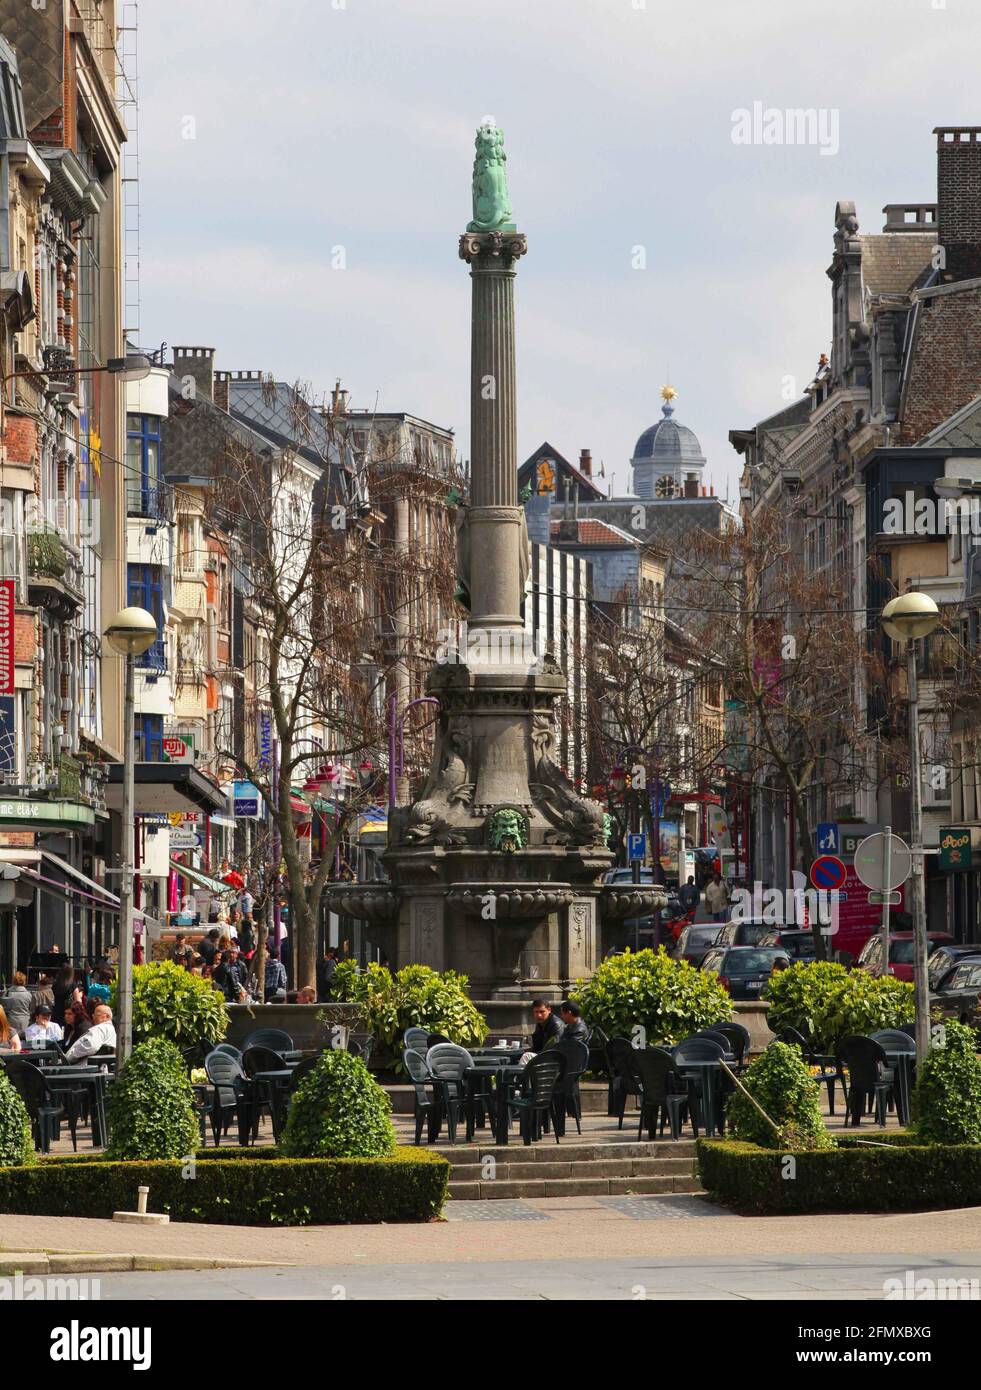 Verviers, Stadt in der Wallonie in Belgien, besticht u. a. durch seine Haeuserzeilen aus der Gruenderzeit. Verviers guerra bis weit nel 20. Jahrhundert Foto Stock